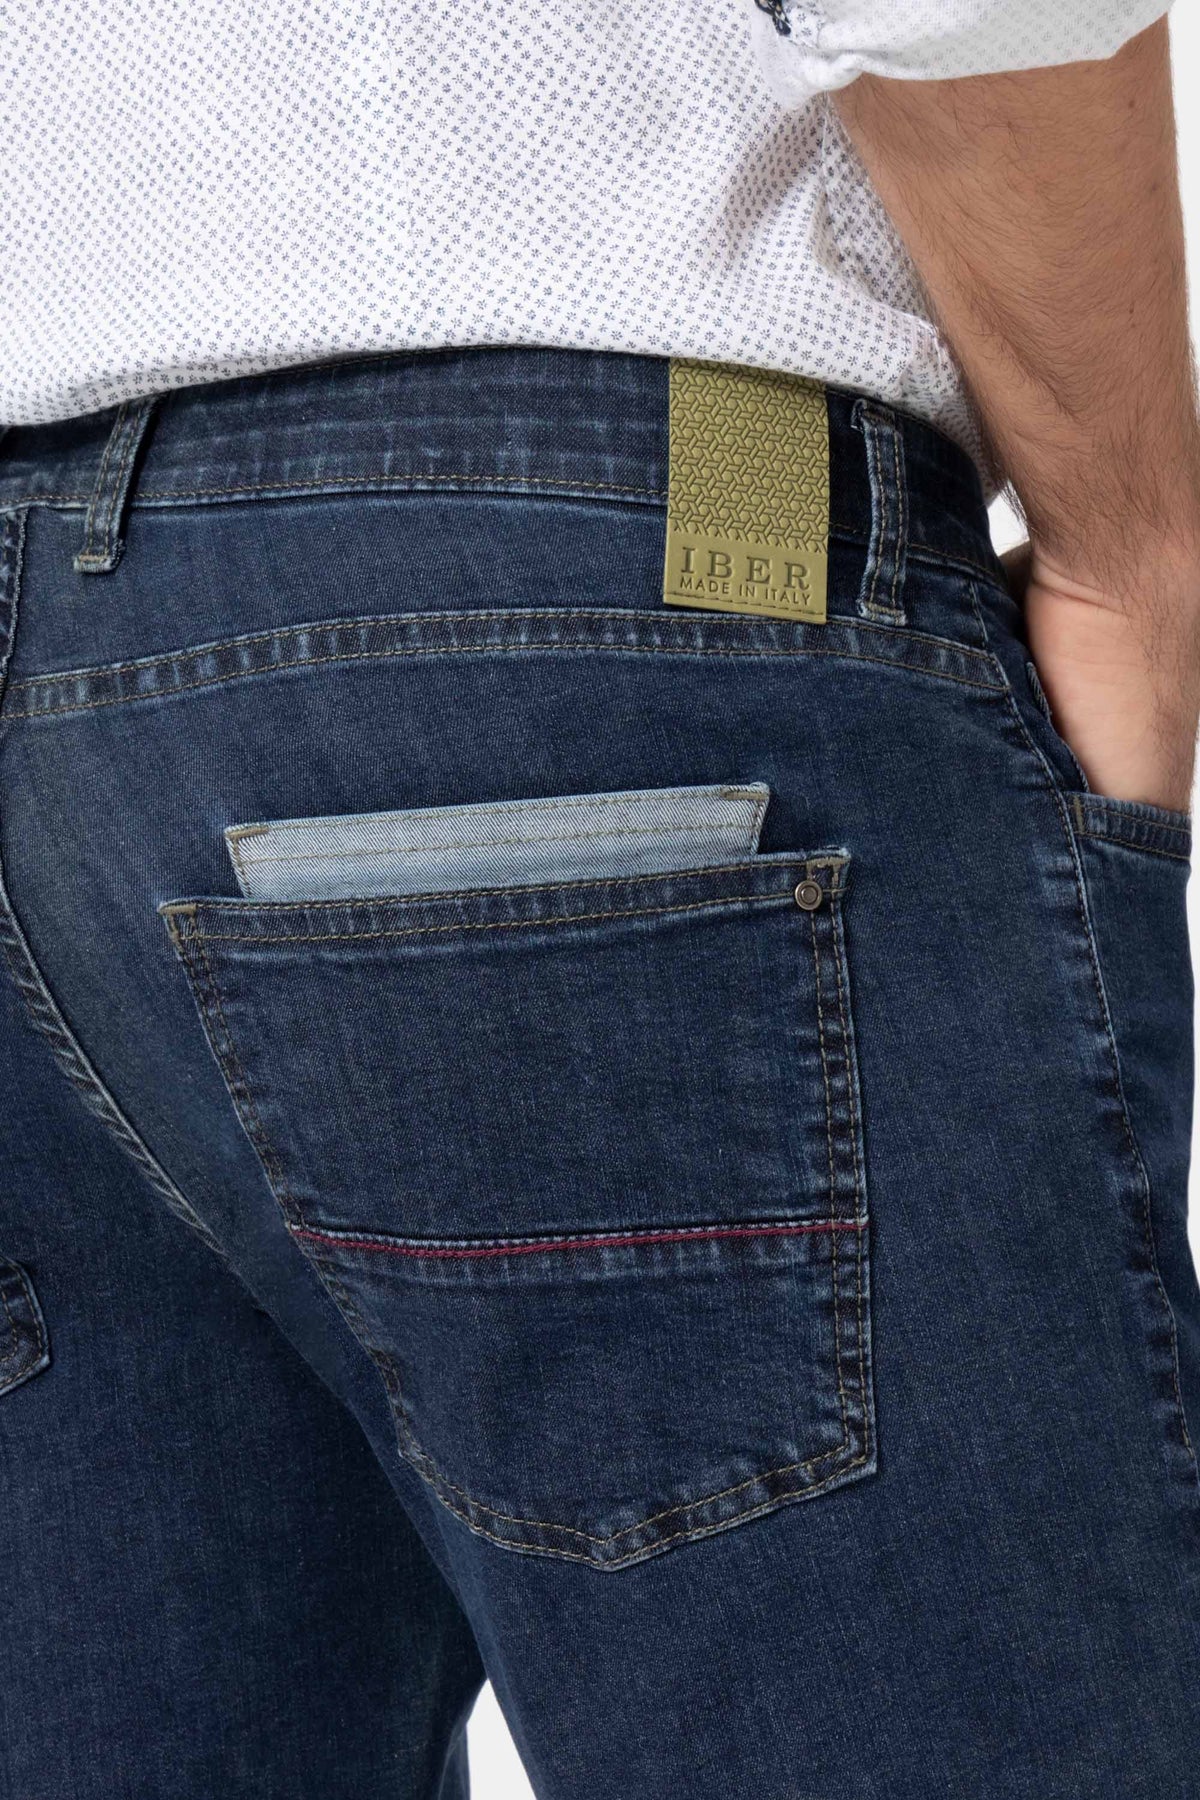 Mauri Sn310 Jeans in denim di cotone stretch